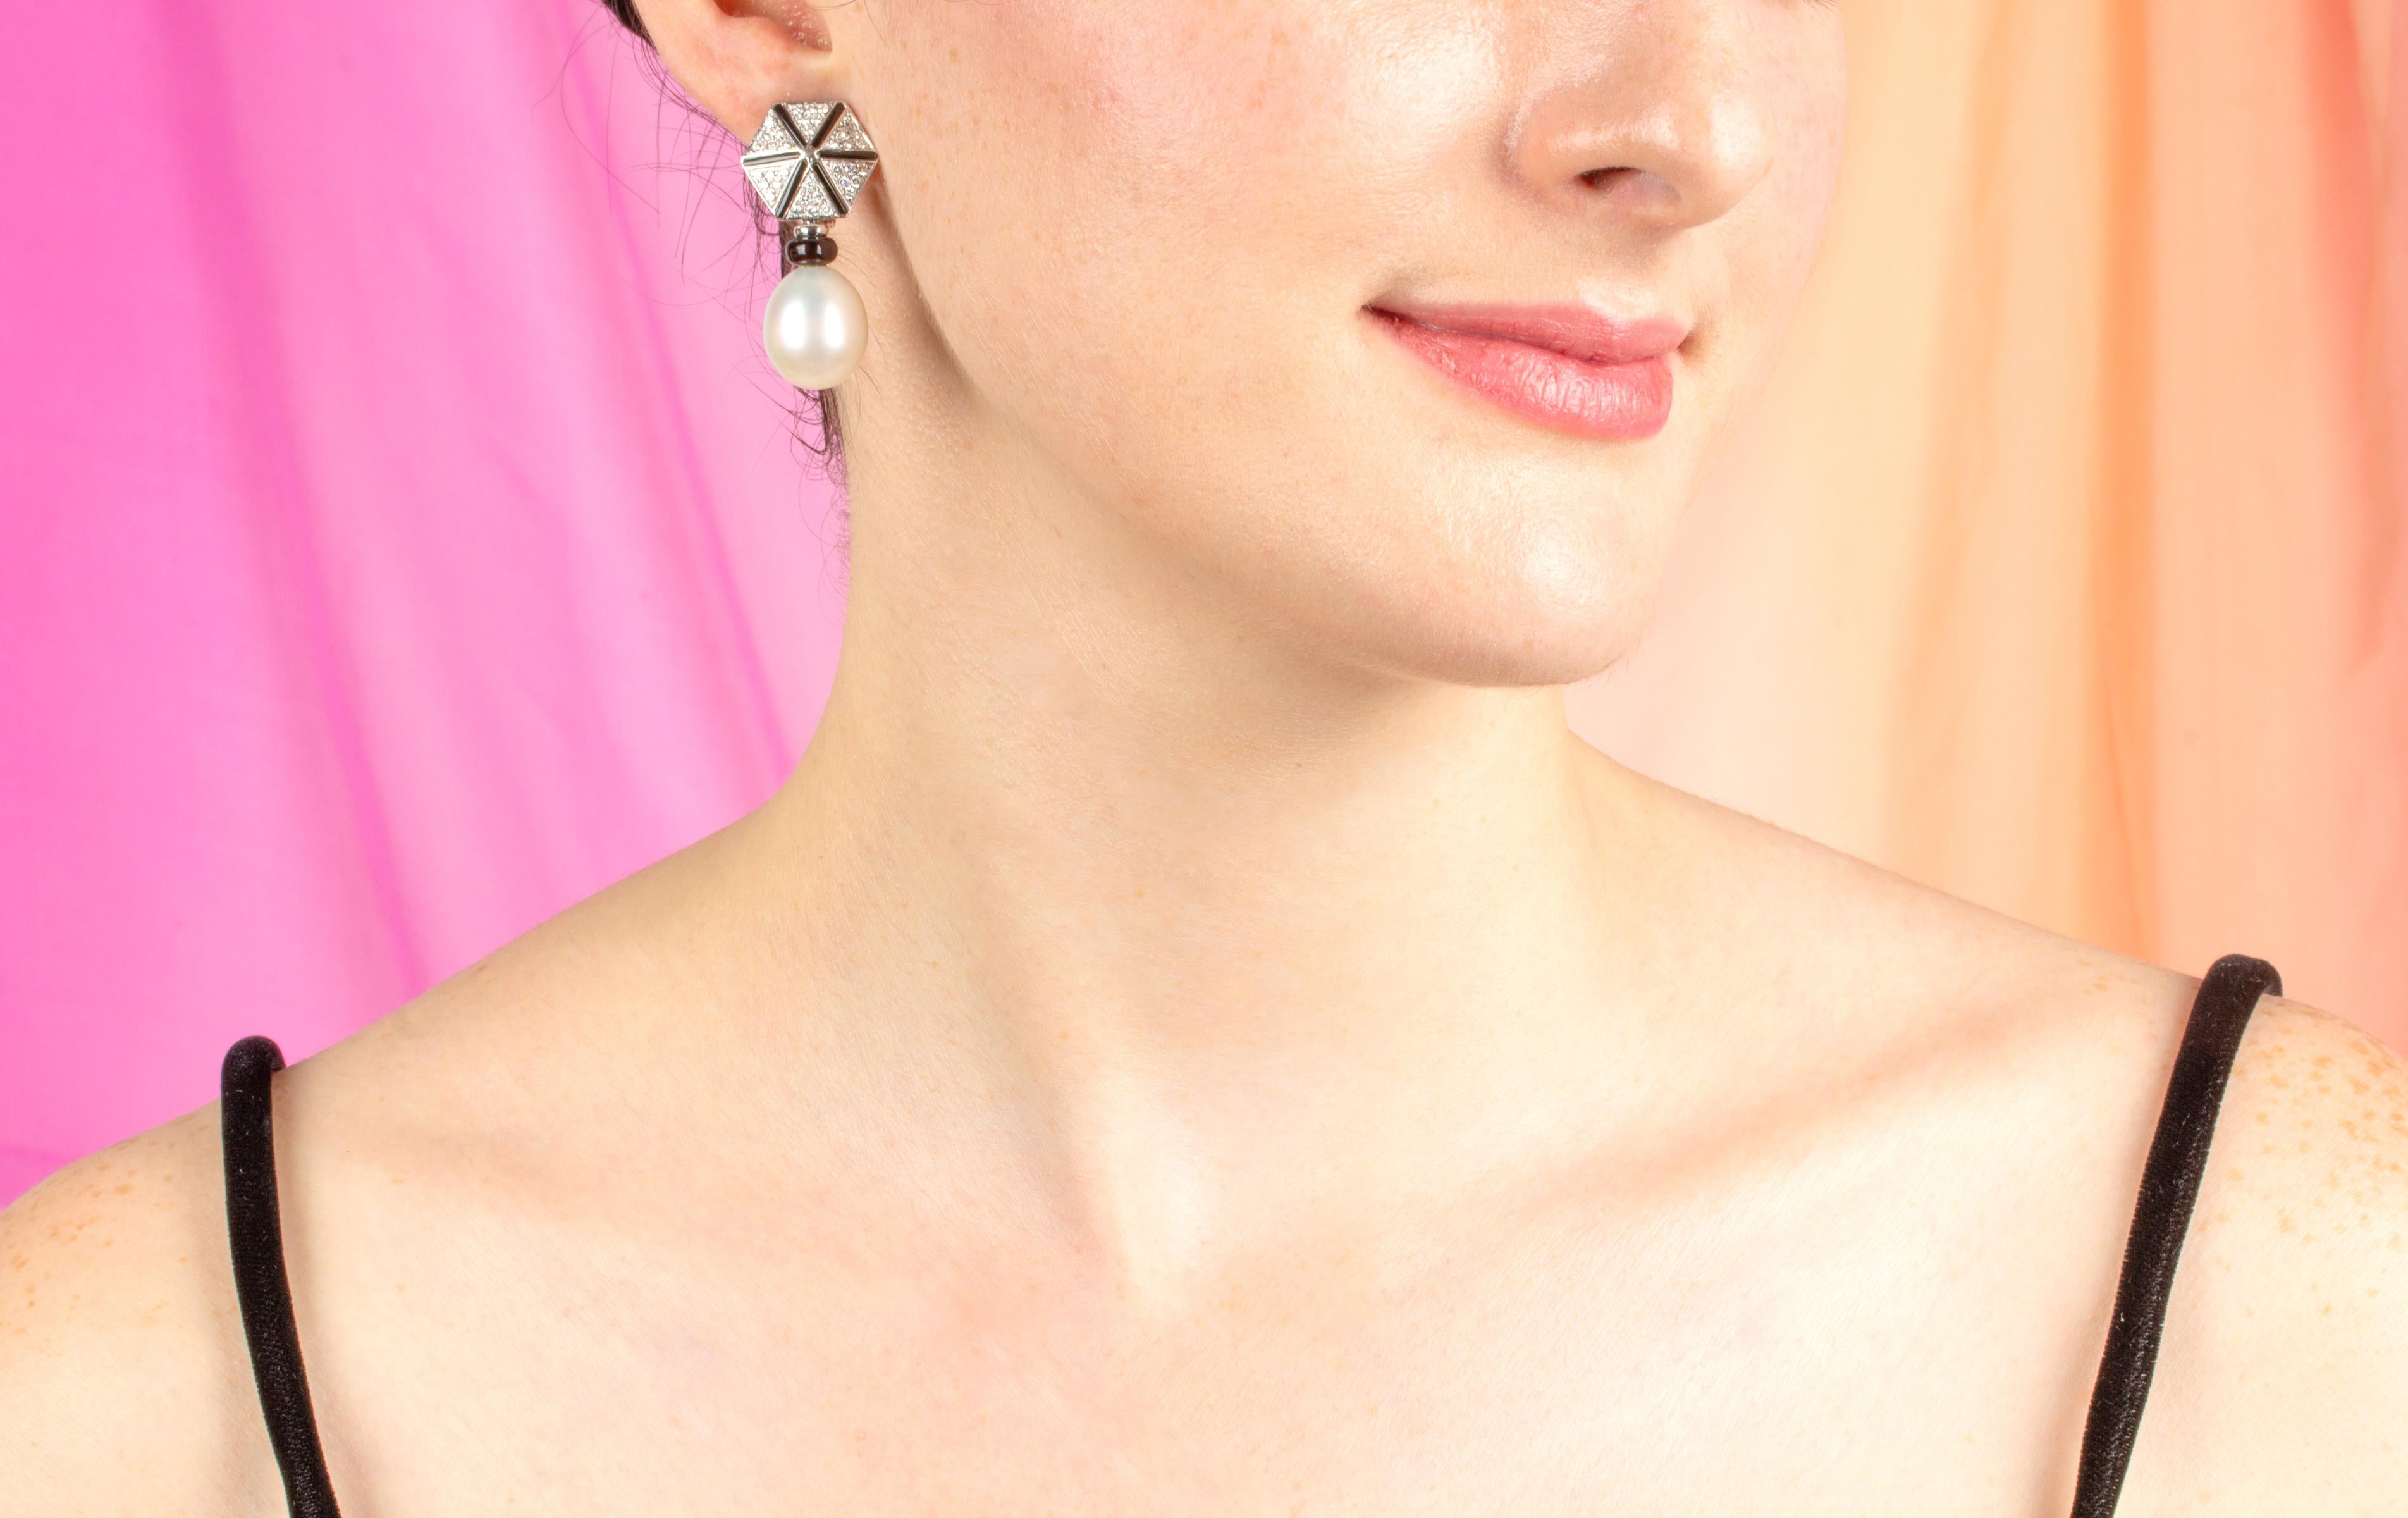 Die Ohrringe mit Südseeperlen und Diamanten haben ein geometrisches Design mit schwarzem Onyx und Diamanten, an denen zwei ovale Perlen von ca. 14 x 16 mm hängen. Die Ohrringe haben einen ausgeprägten Art-Déco-Look. Die unbehandelten Südseeperlen